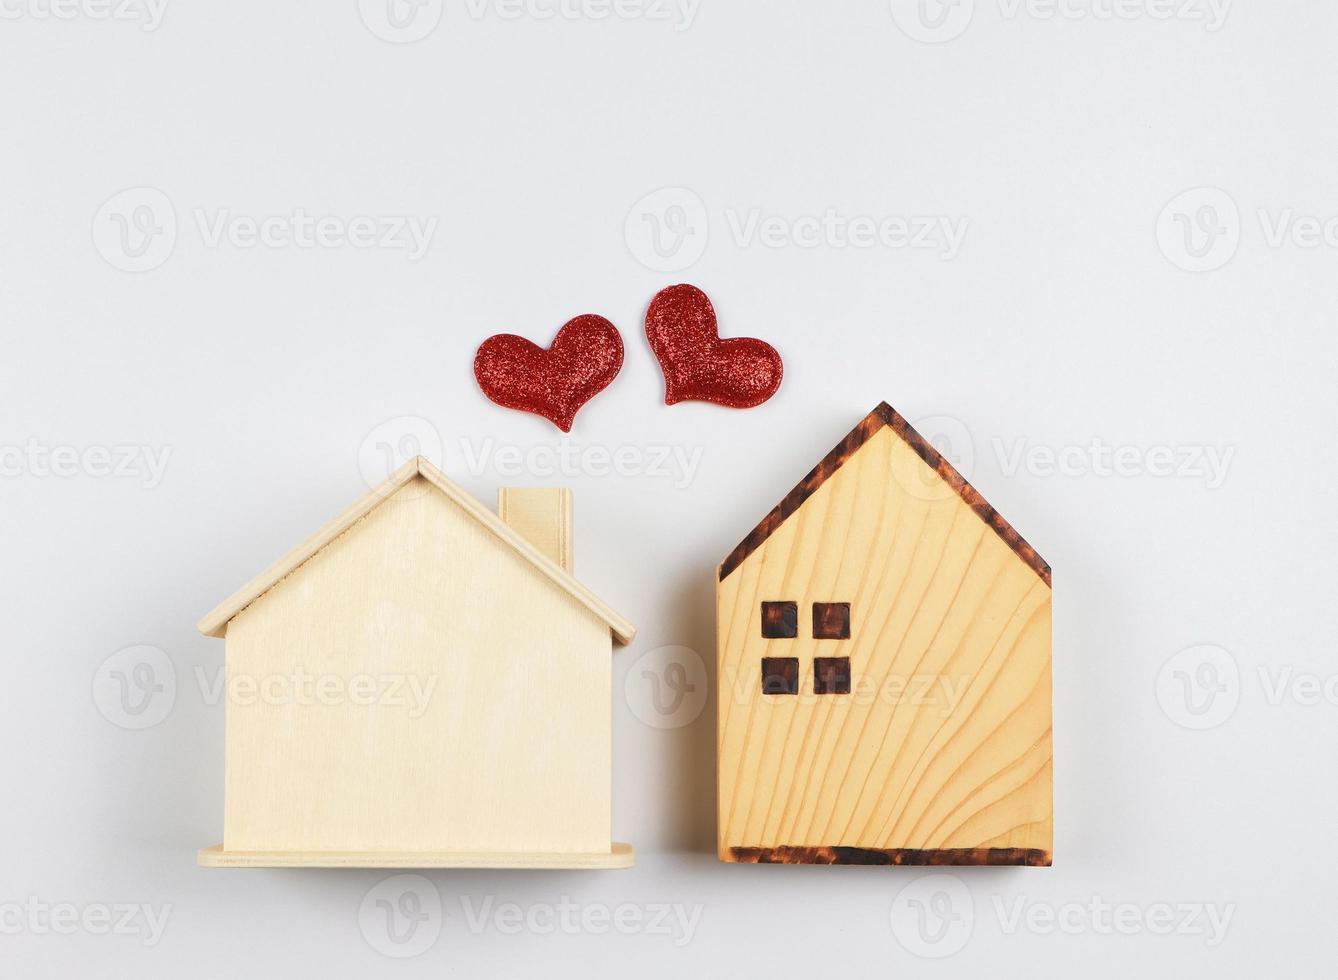 plano laico de dos de madera modelo casas con rojo Brillantina corazones en blanco antecedentes. sueño casa , hogar de amar, fuerte relación, vecino casas, san valentin foto